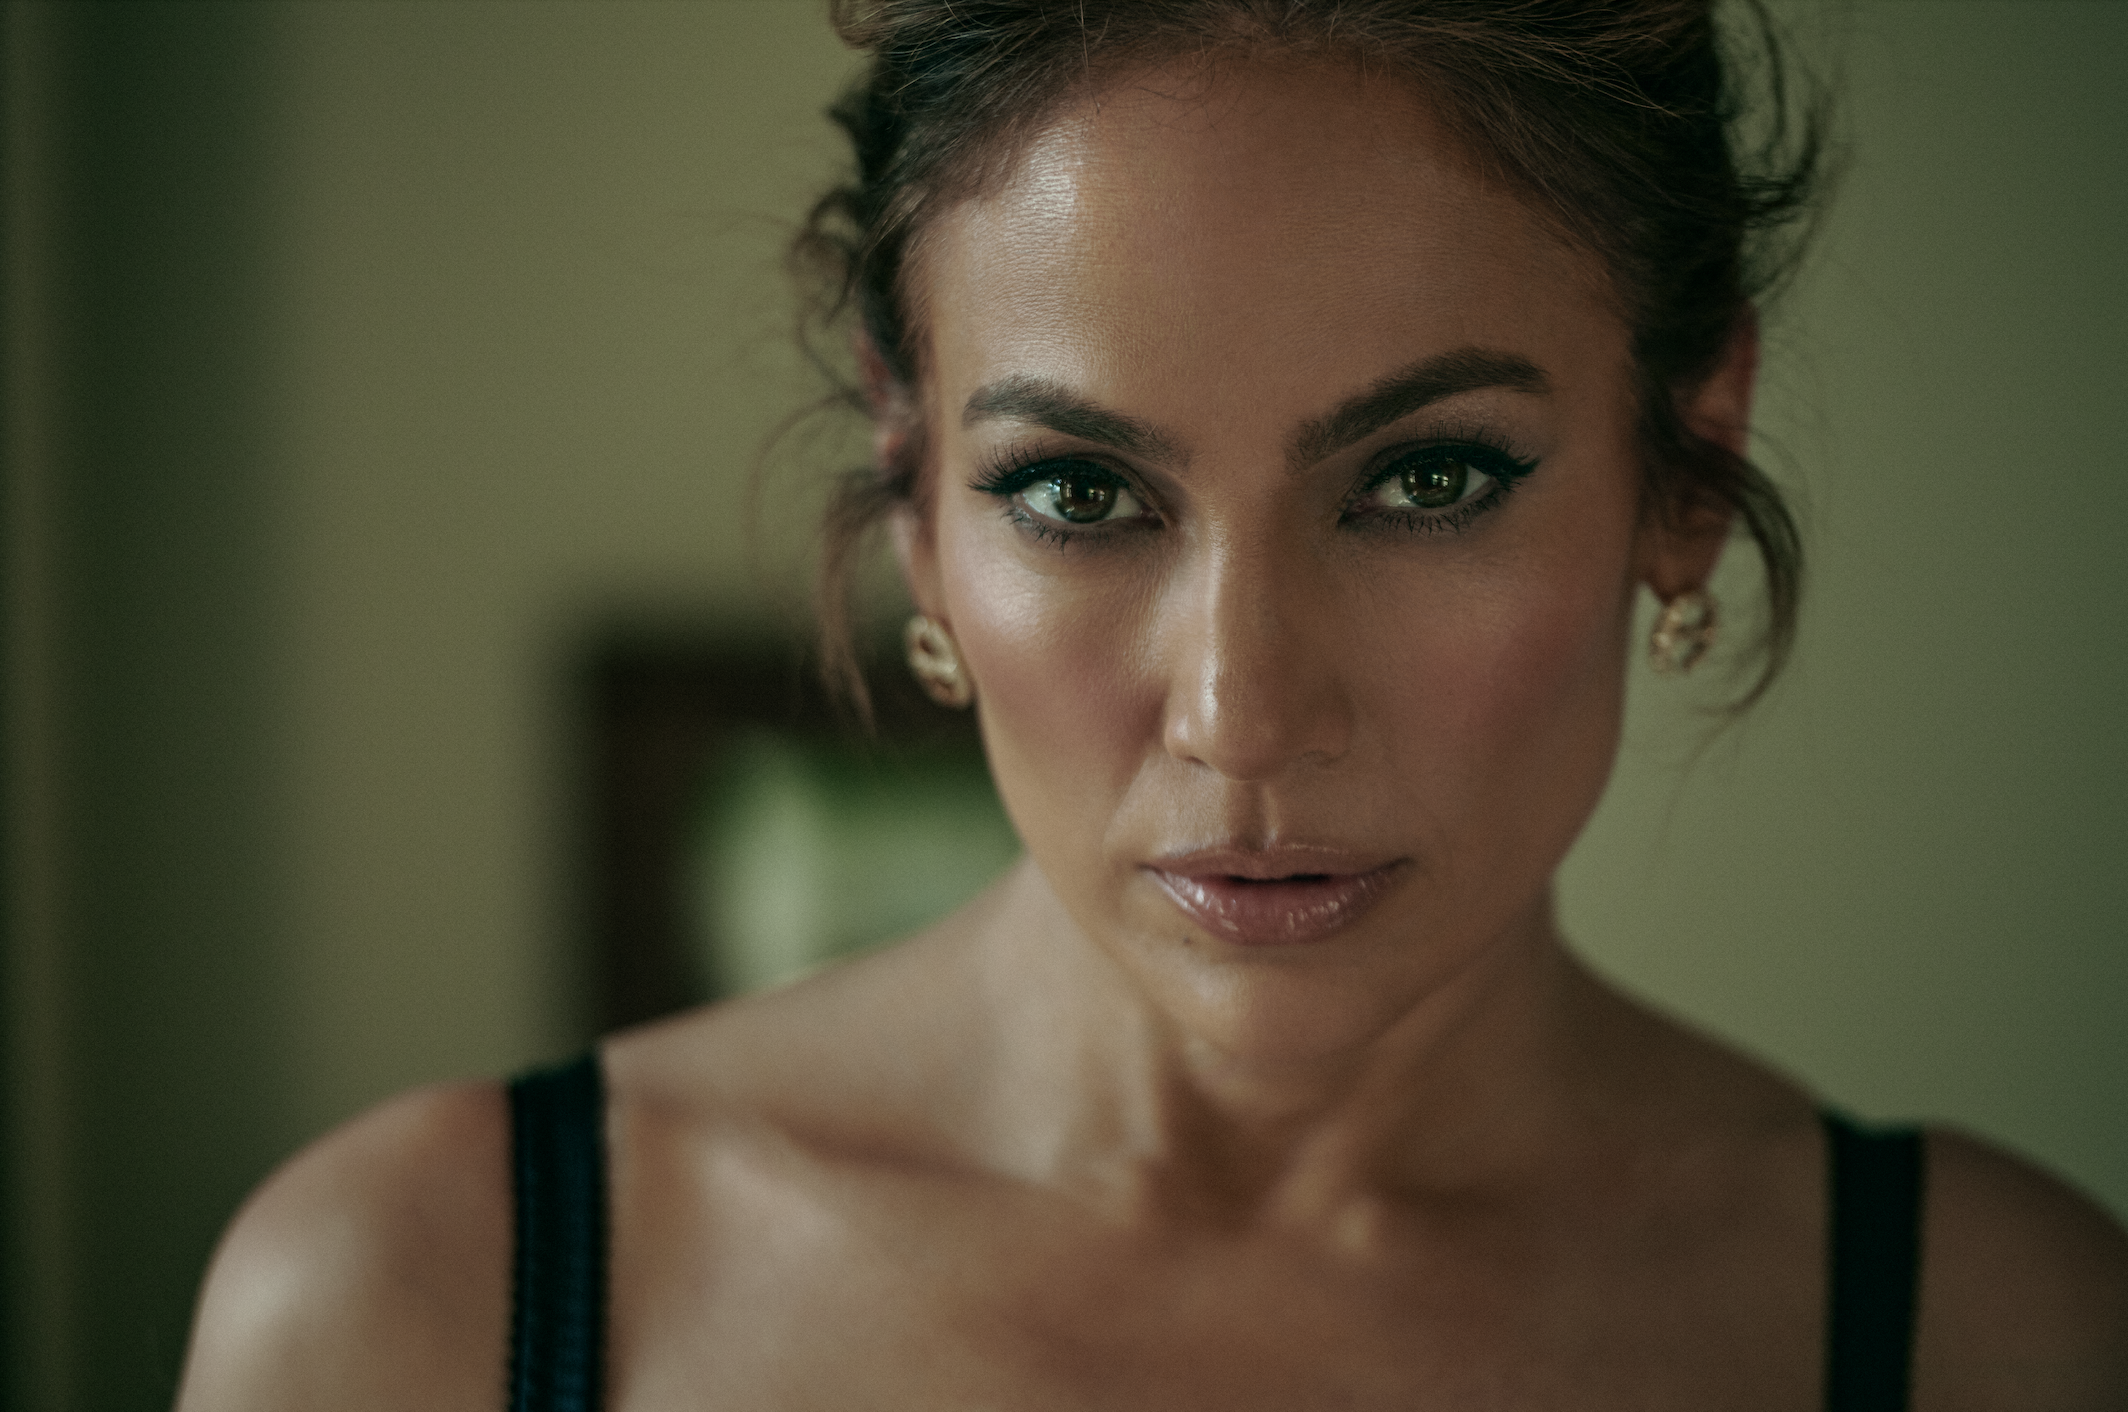 Quase 10 anos depois, Jennifer Lopez vai lançar um novo disco, “This Is Me…Now”, e um filme